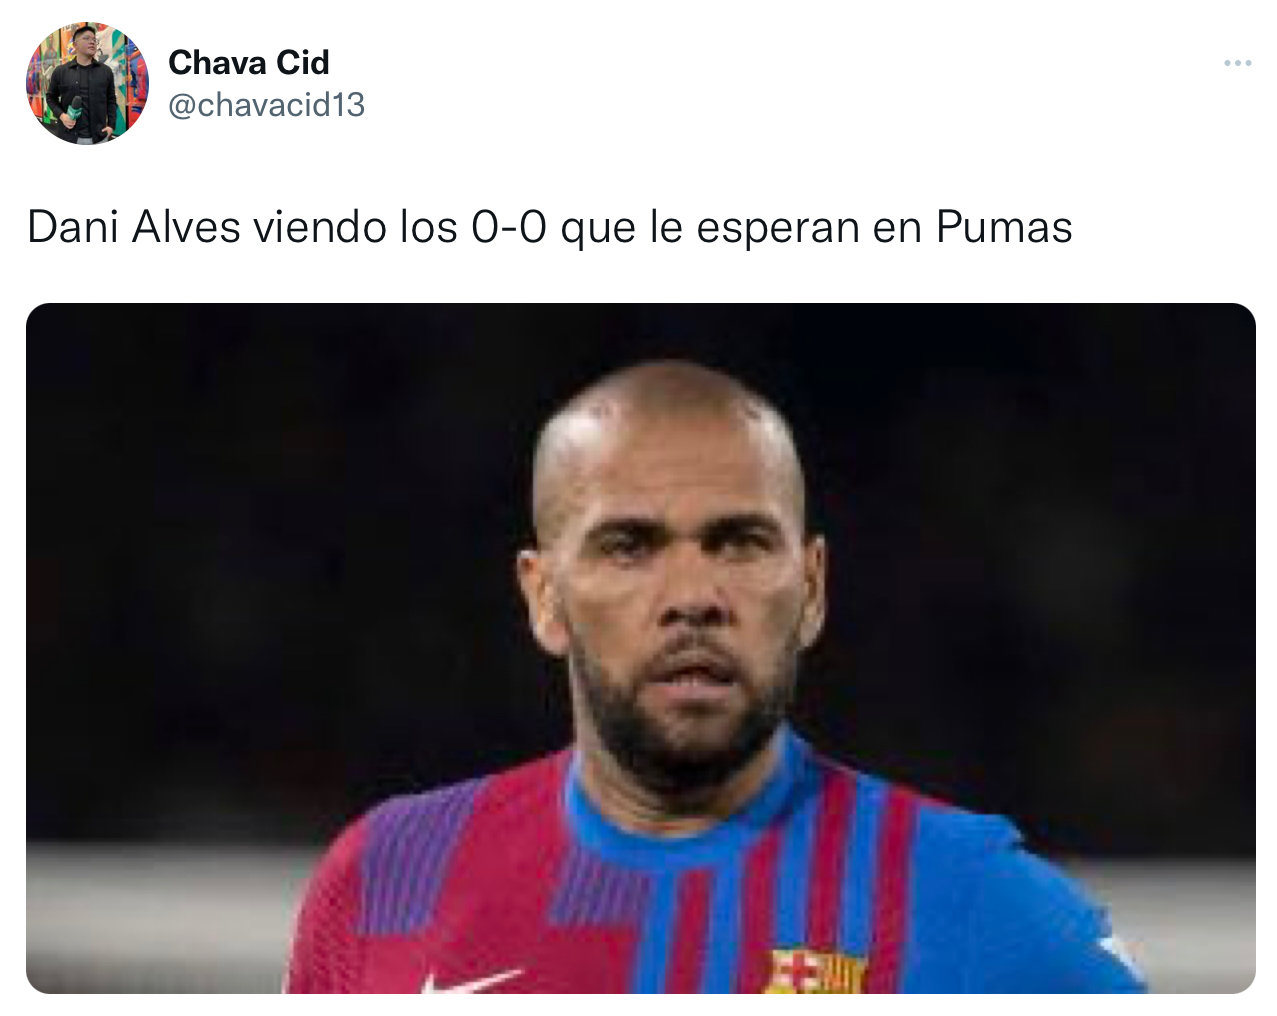 Els mems en xarxes, van girar al voltant del penediment que podria tenir Dani Alves si hagués signat amb els Pumas després d'una trobada sense emocions (Captura de pantalla: Twitter)